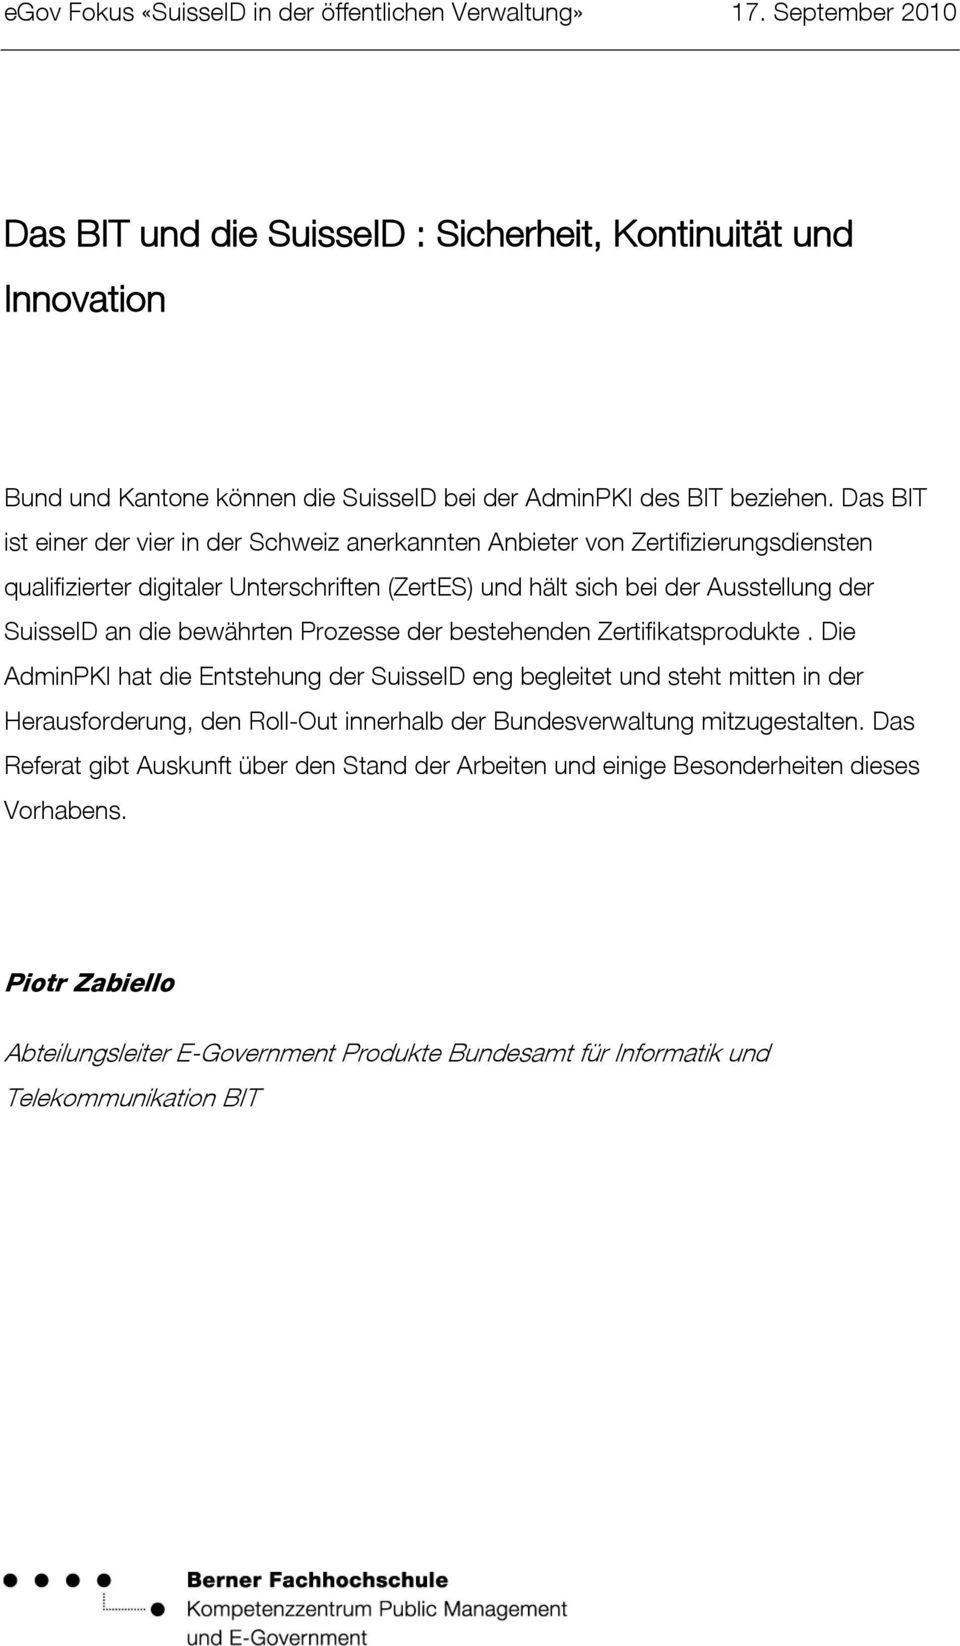 Das BIT ist einer der vier in der Schweiz anerkannten Anbieter von Zertifizierungsdiensten qualifizierter digitaler Unterschriften (ZertES) und hält sich bei der Ausstellung der SuisseID an die